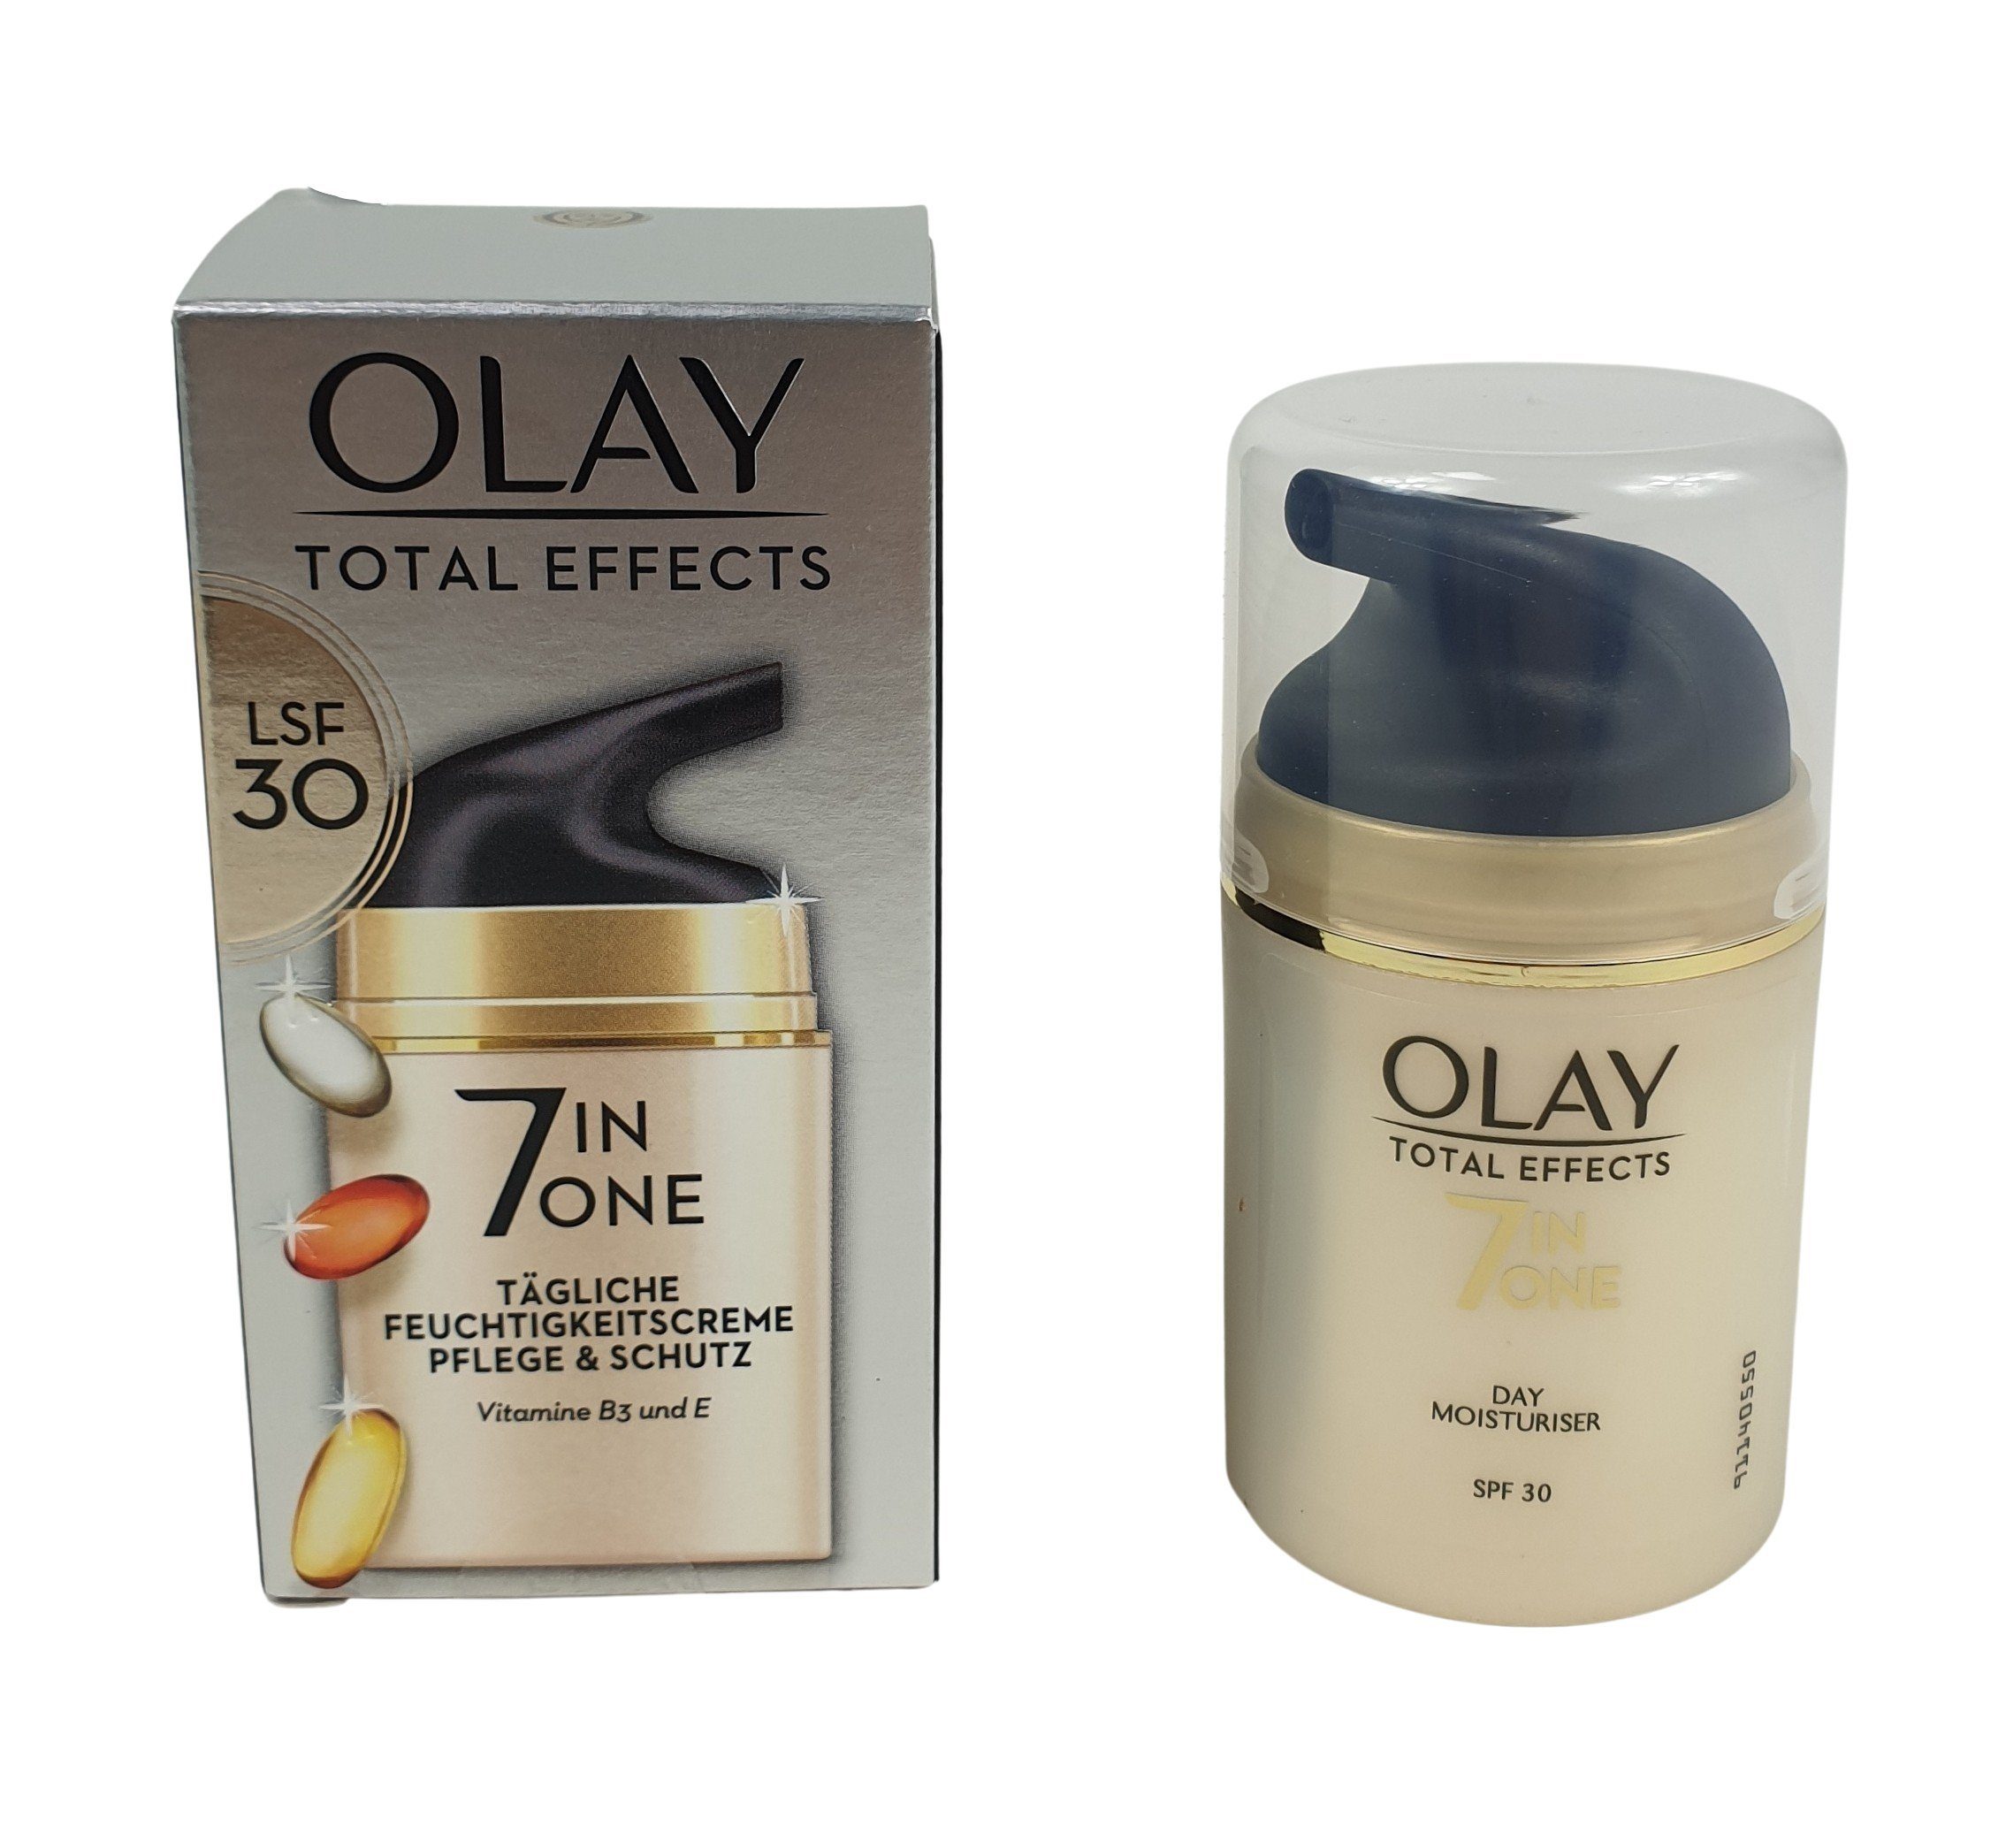 Olay Feuchtigkeitscreme Total Effects 7-in-1 Tägliche Feuchtigkeitscreme,  mit LSF 15, 50ml, Tagescreme mit Vitamin E, B3 und B5 für Pflege & Schutz  der Haut, Gesichtscreme